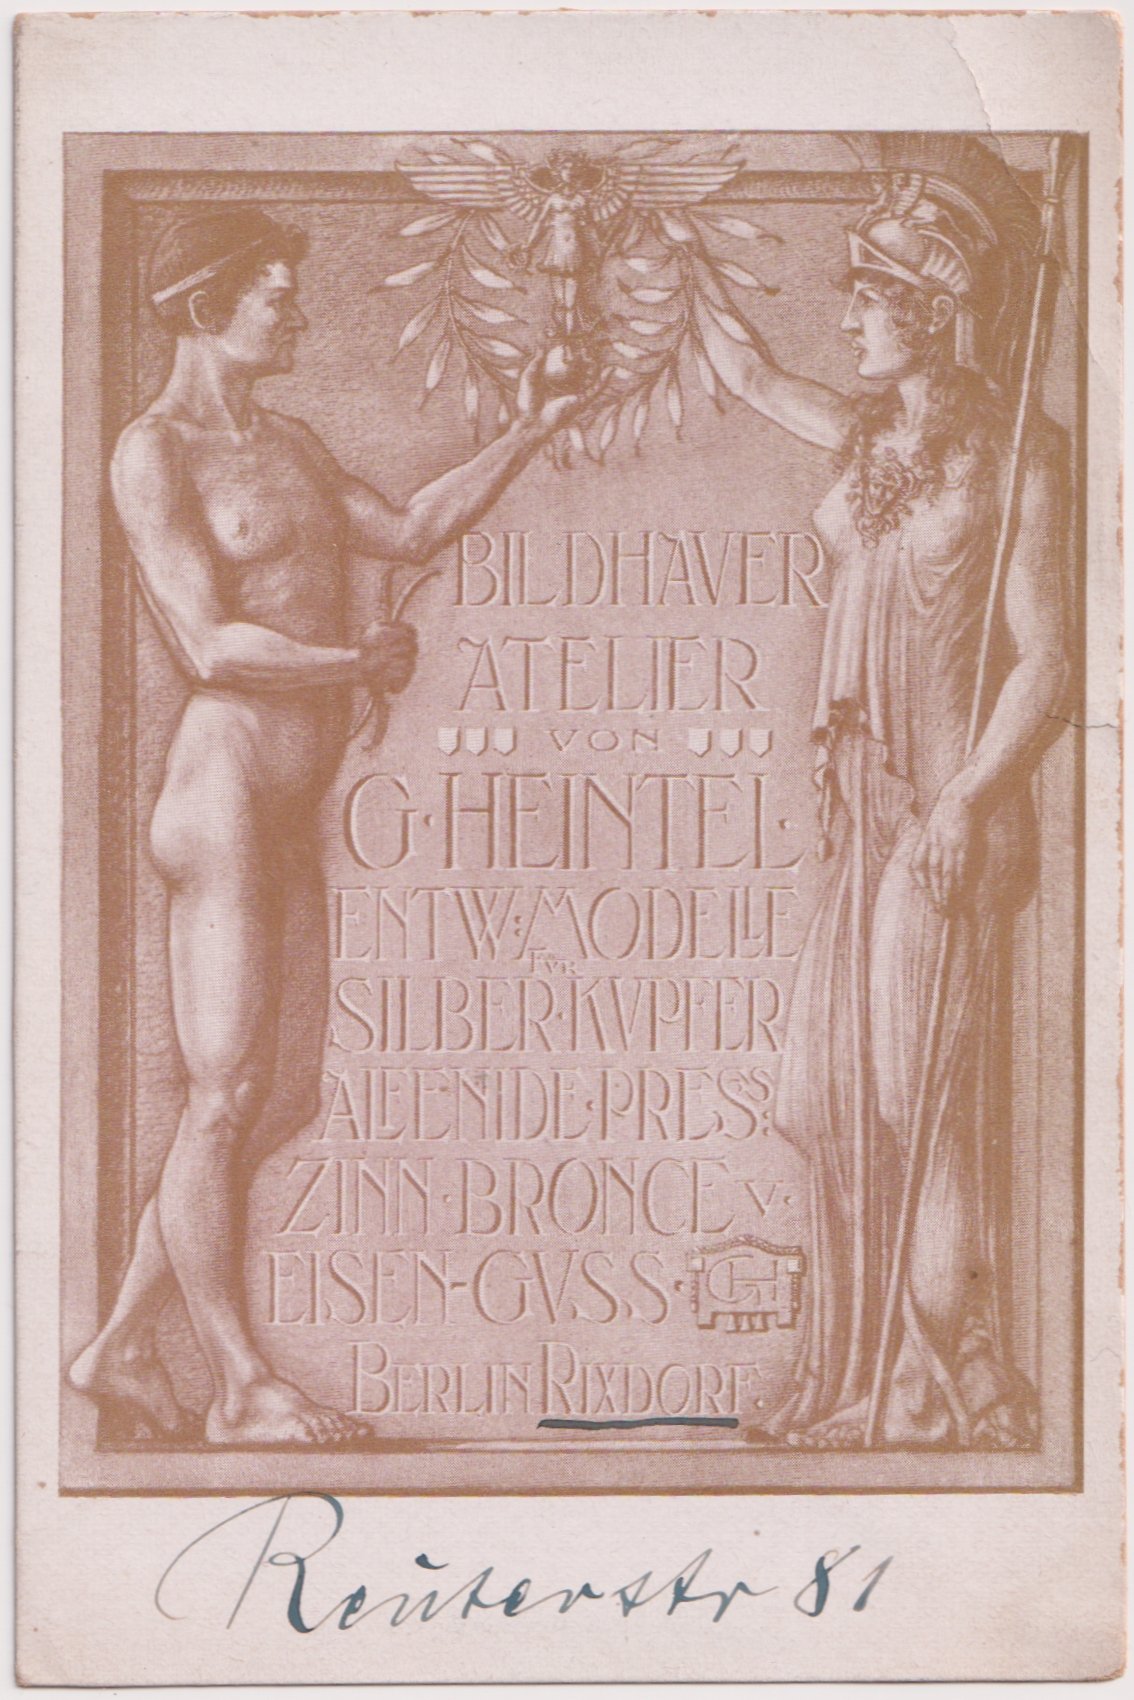 Werbekarte des Bildhauers Gottlieb Heintel (n.n.), Berlin-Rixdorf (Sammlung Luftfahrt.Industrie.Westfalen | Moritz-Adolf Trappe CC BY-NC-SA)